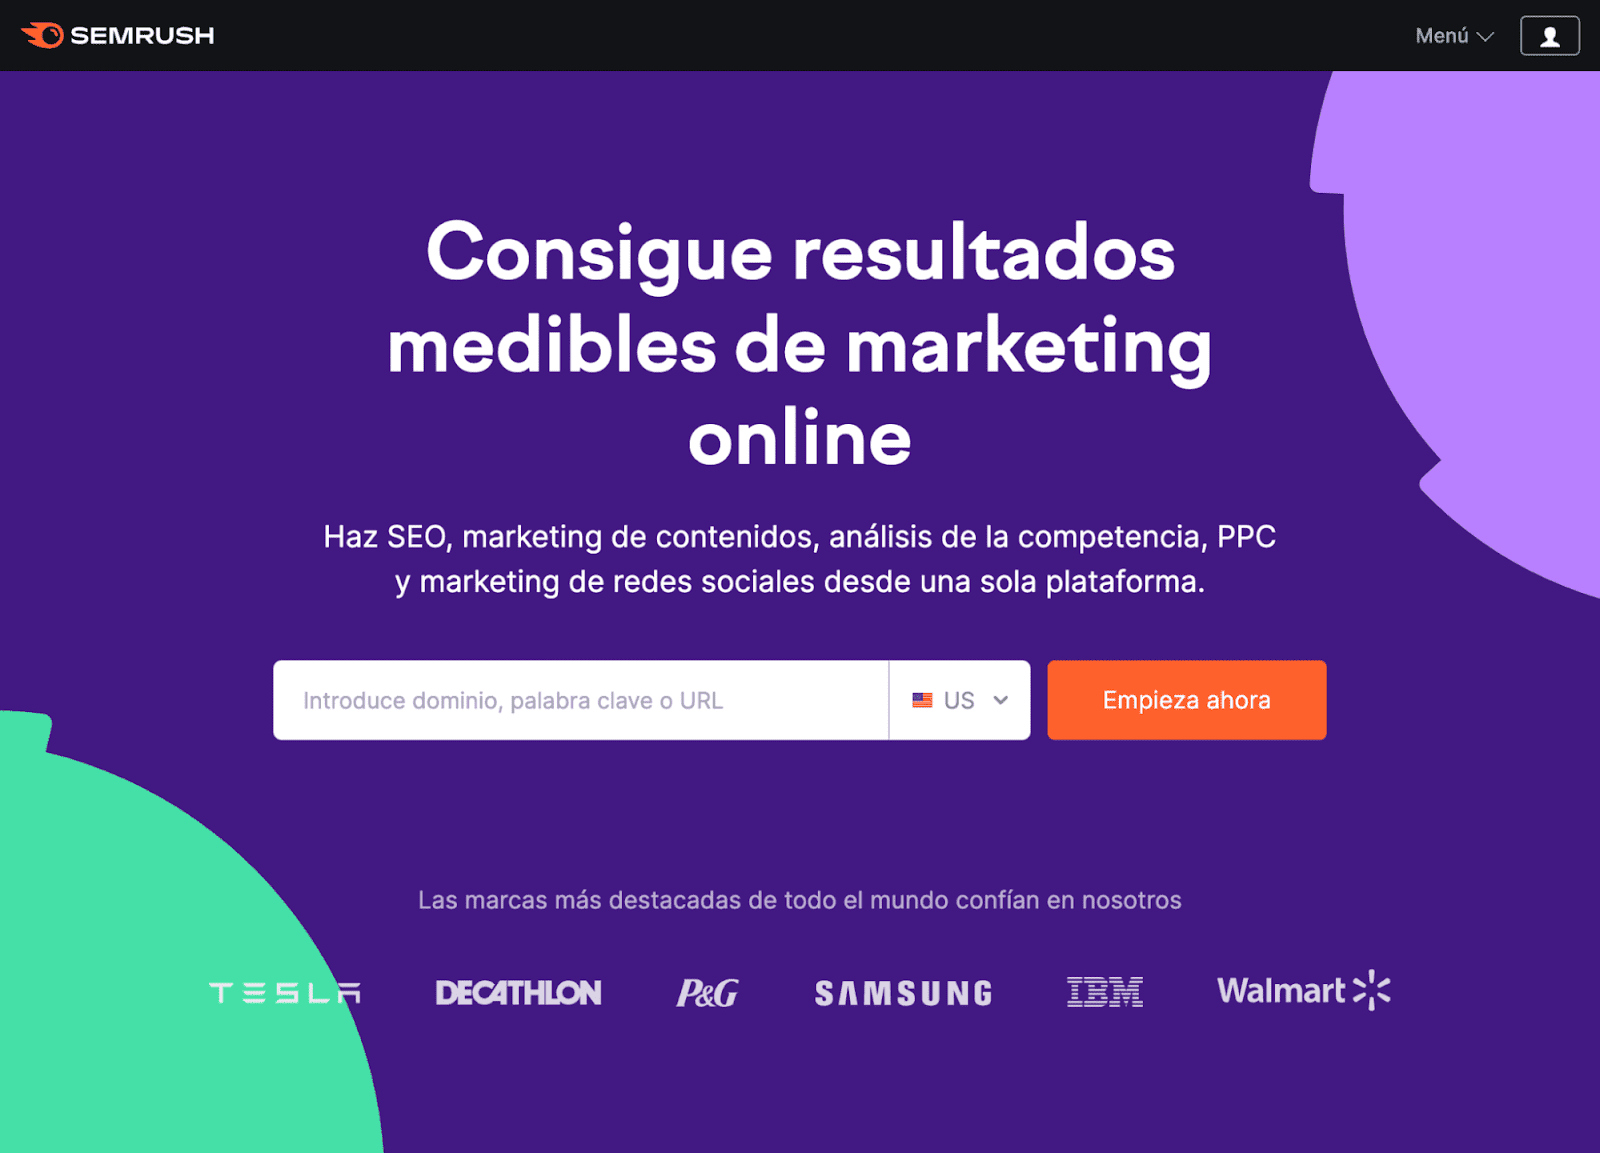 Semrush homepage in Spanish